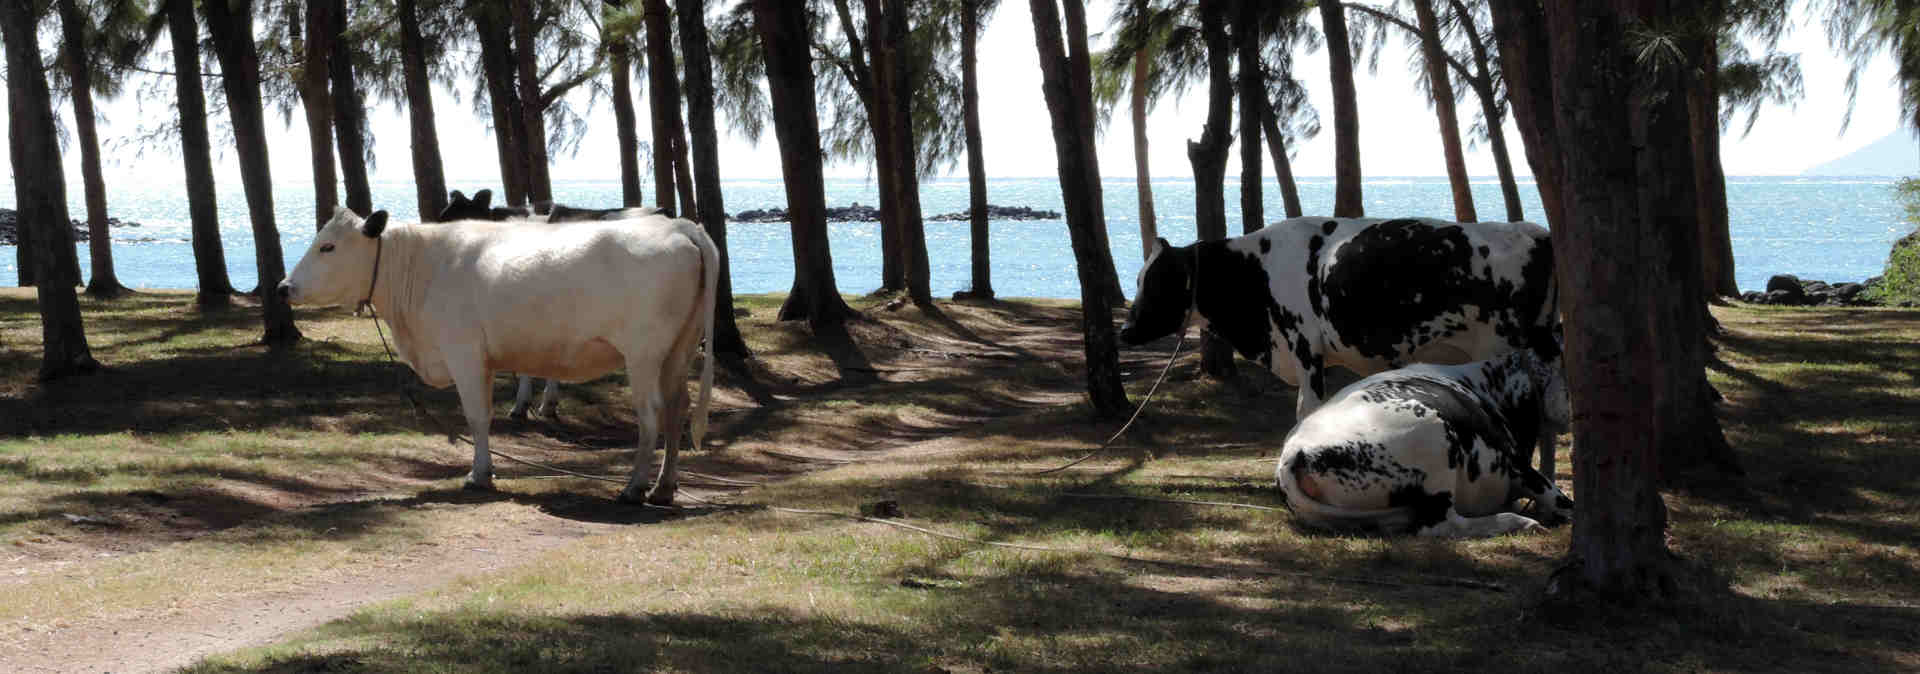 Kühe am Strand von Mauritius